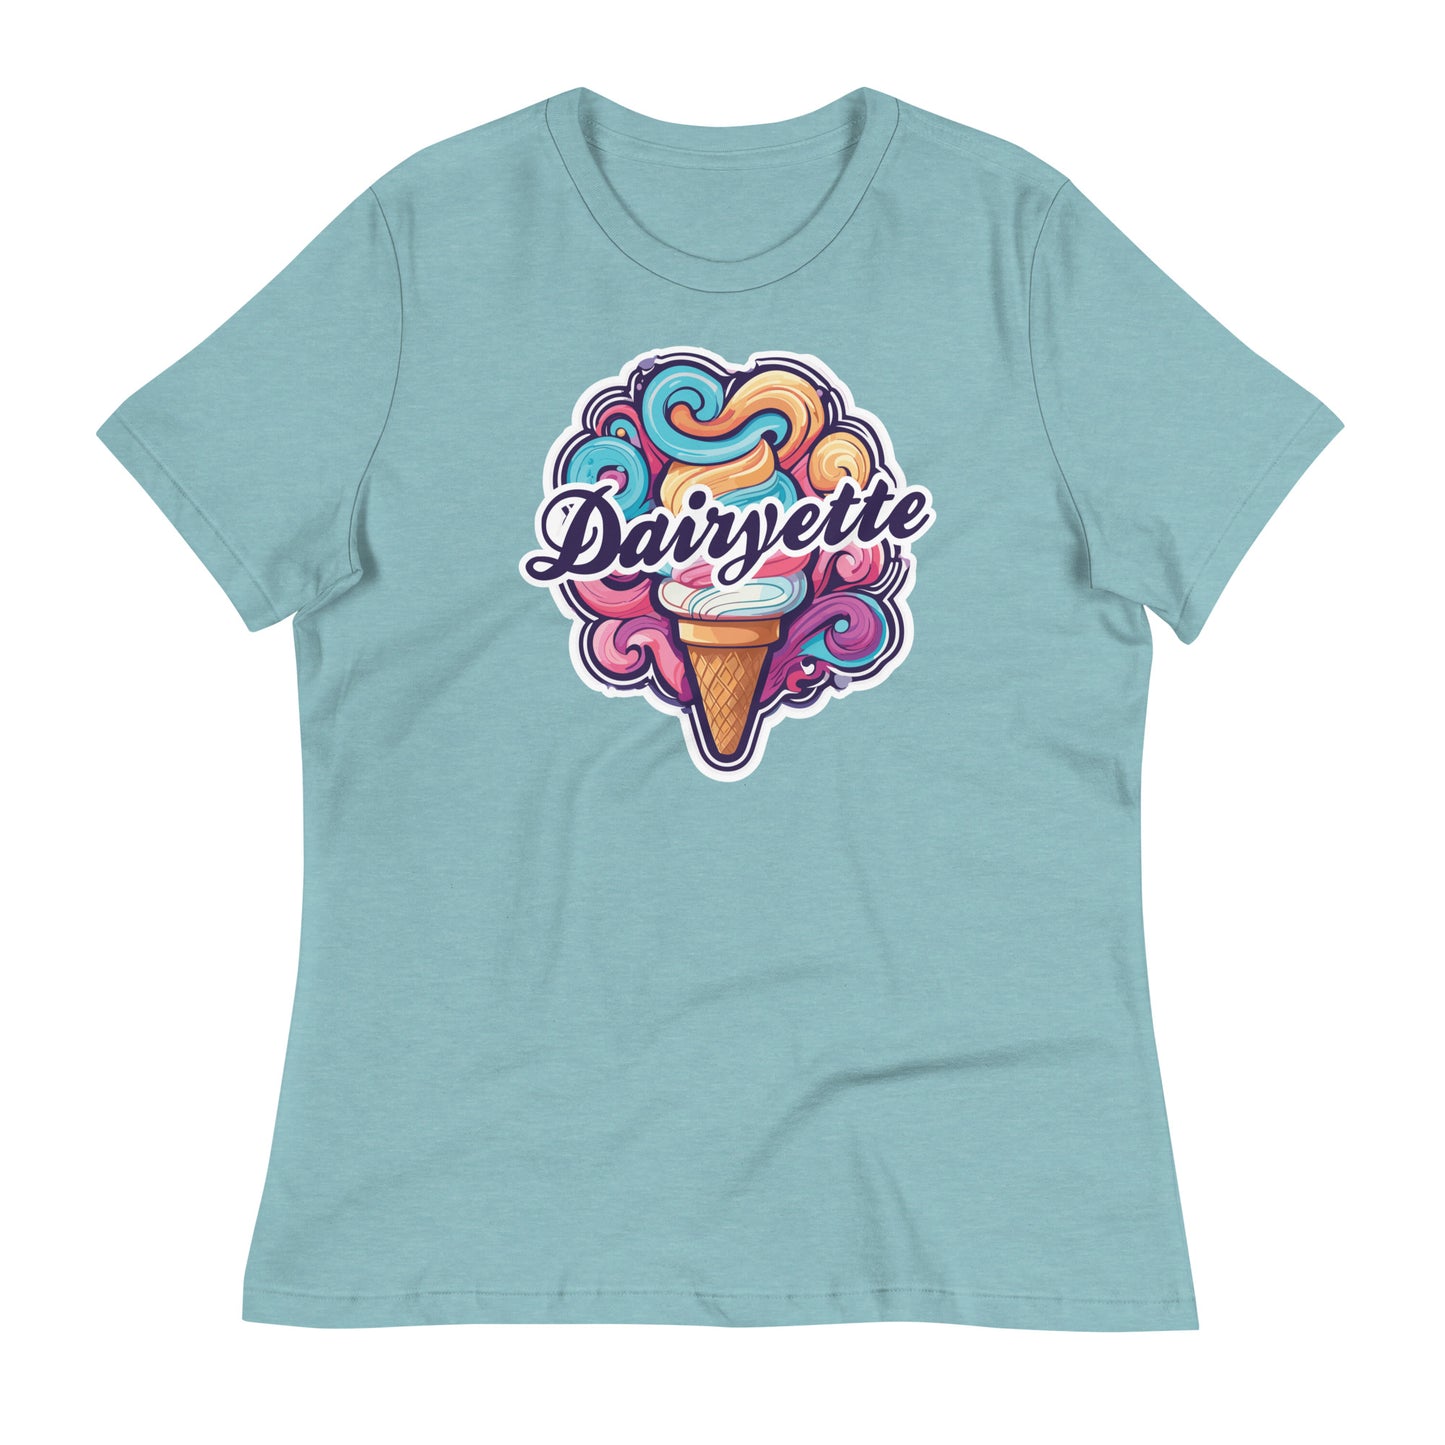 Women's Dairyette Relaxed T-Shirt